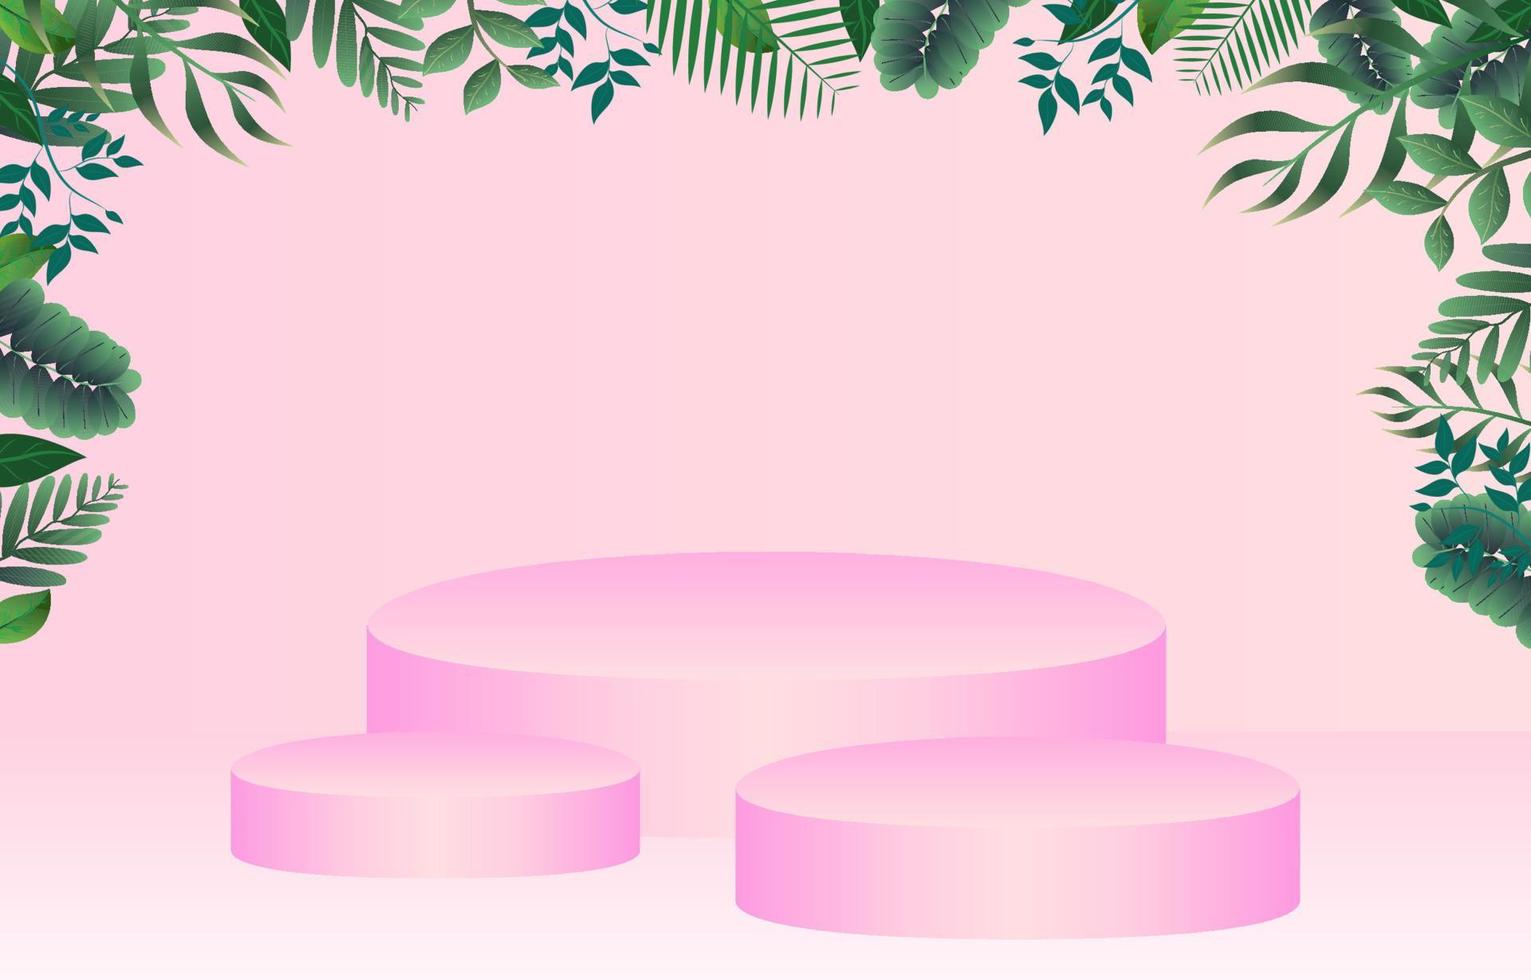 cadre de feuilles tropicales vertes avec fond de présentoir de podium rose. vecteur piédestal rond pour afficher des produits avec des cadres de branches de brindilles à base de plantes. illustration vectorielle de podium de fête d'été tropical